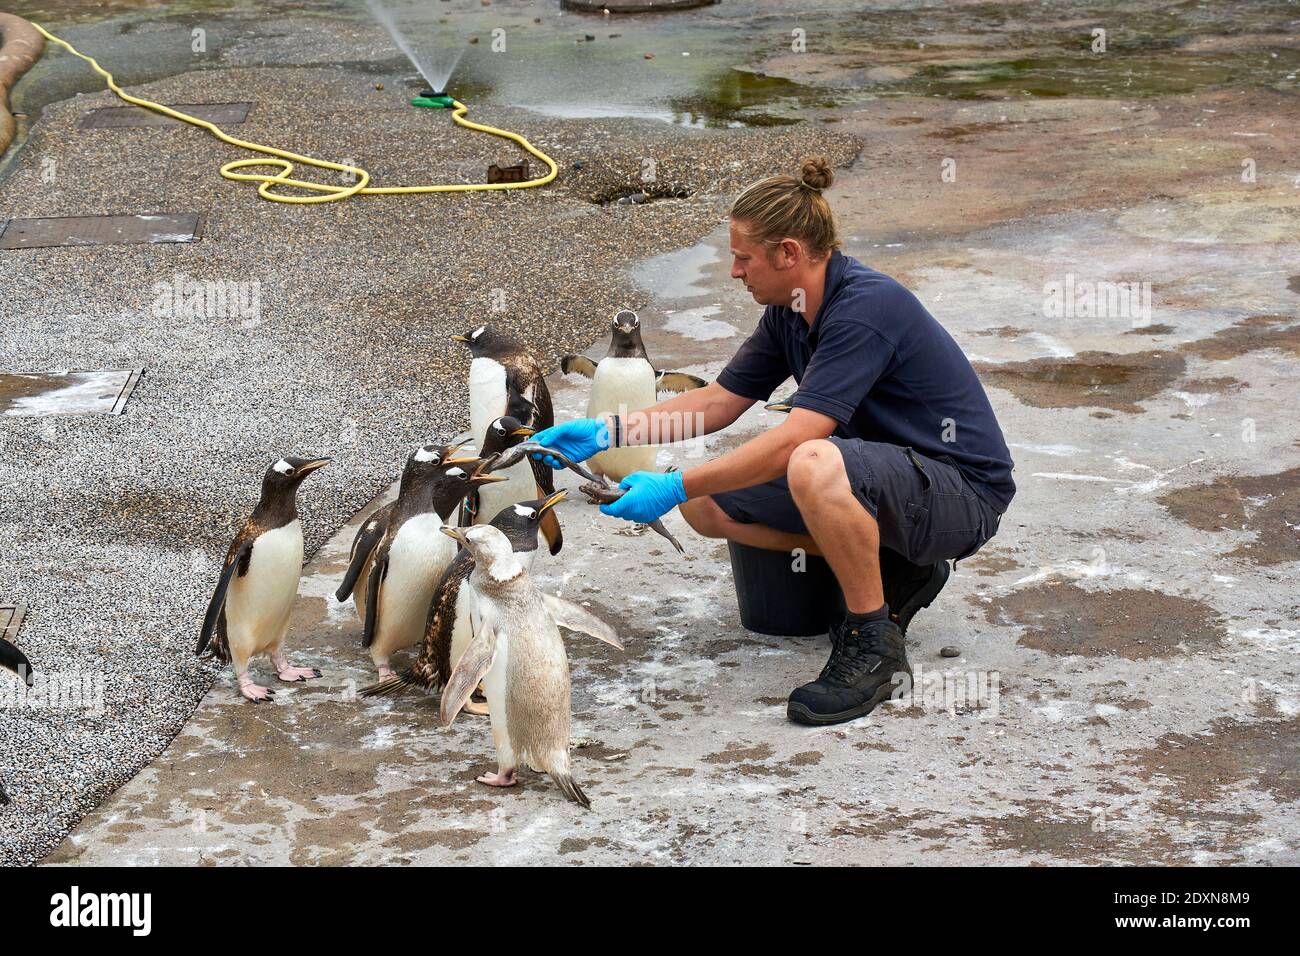 Tempo di alimentazione dei pinguini Gentoo in cattività nello zoo di Edimburgo RZSS, Scozia, Regno Unito Foto Stock